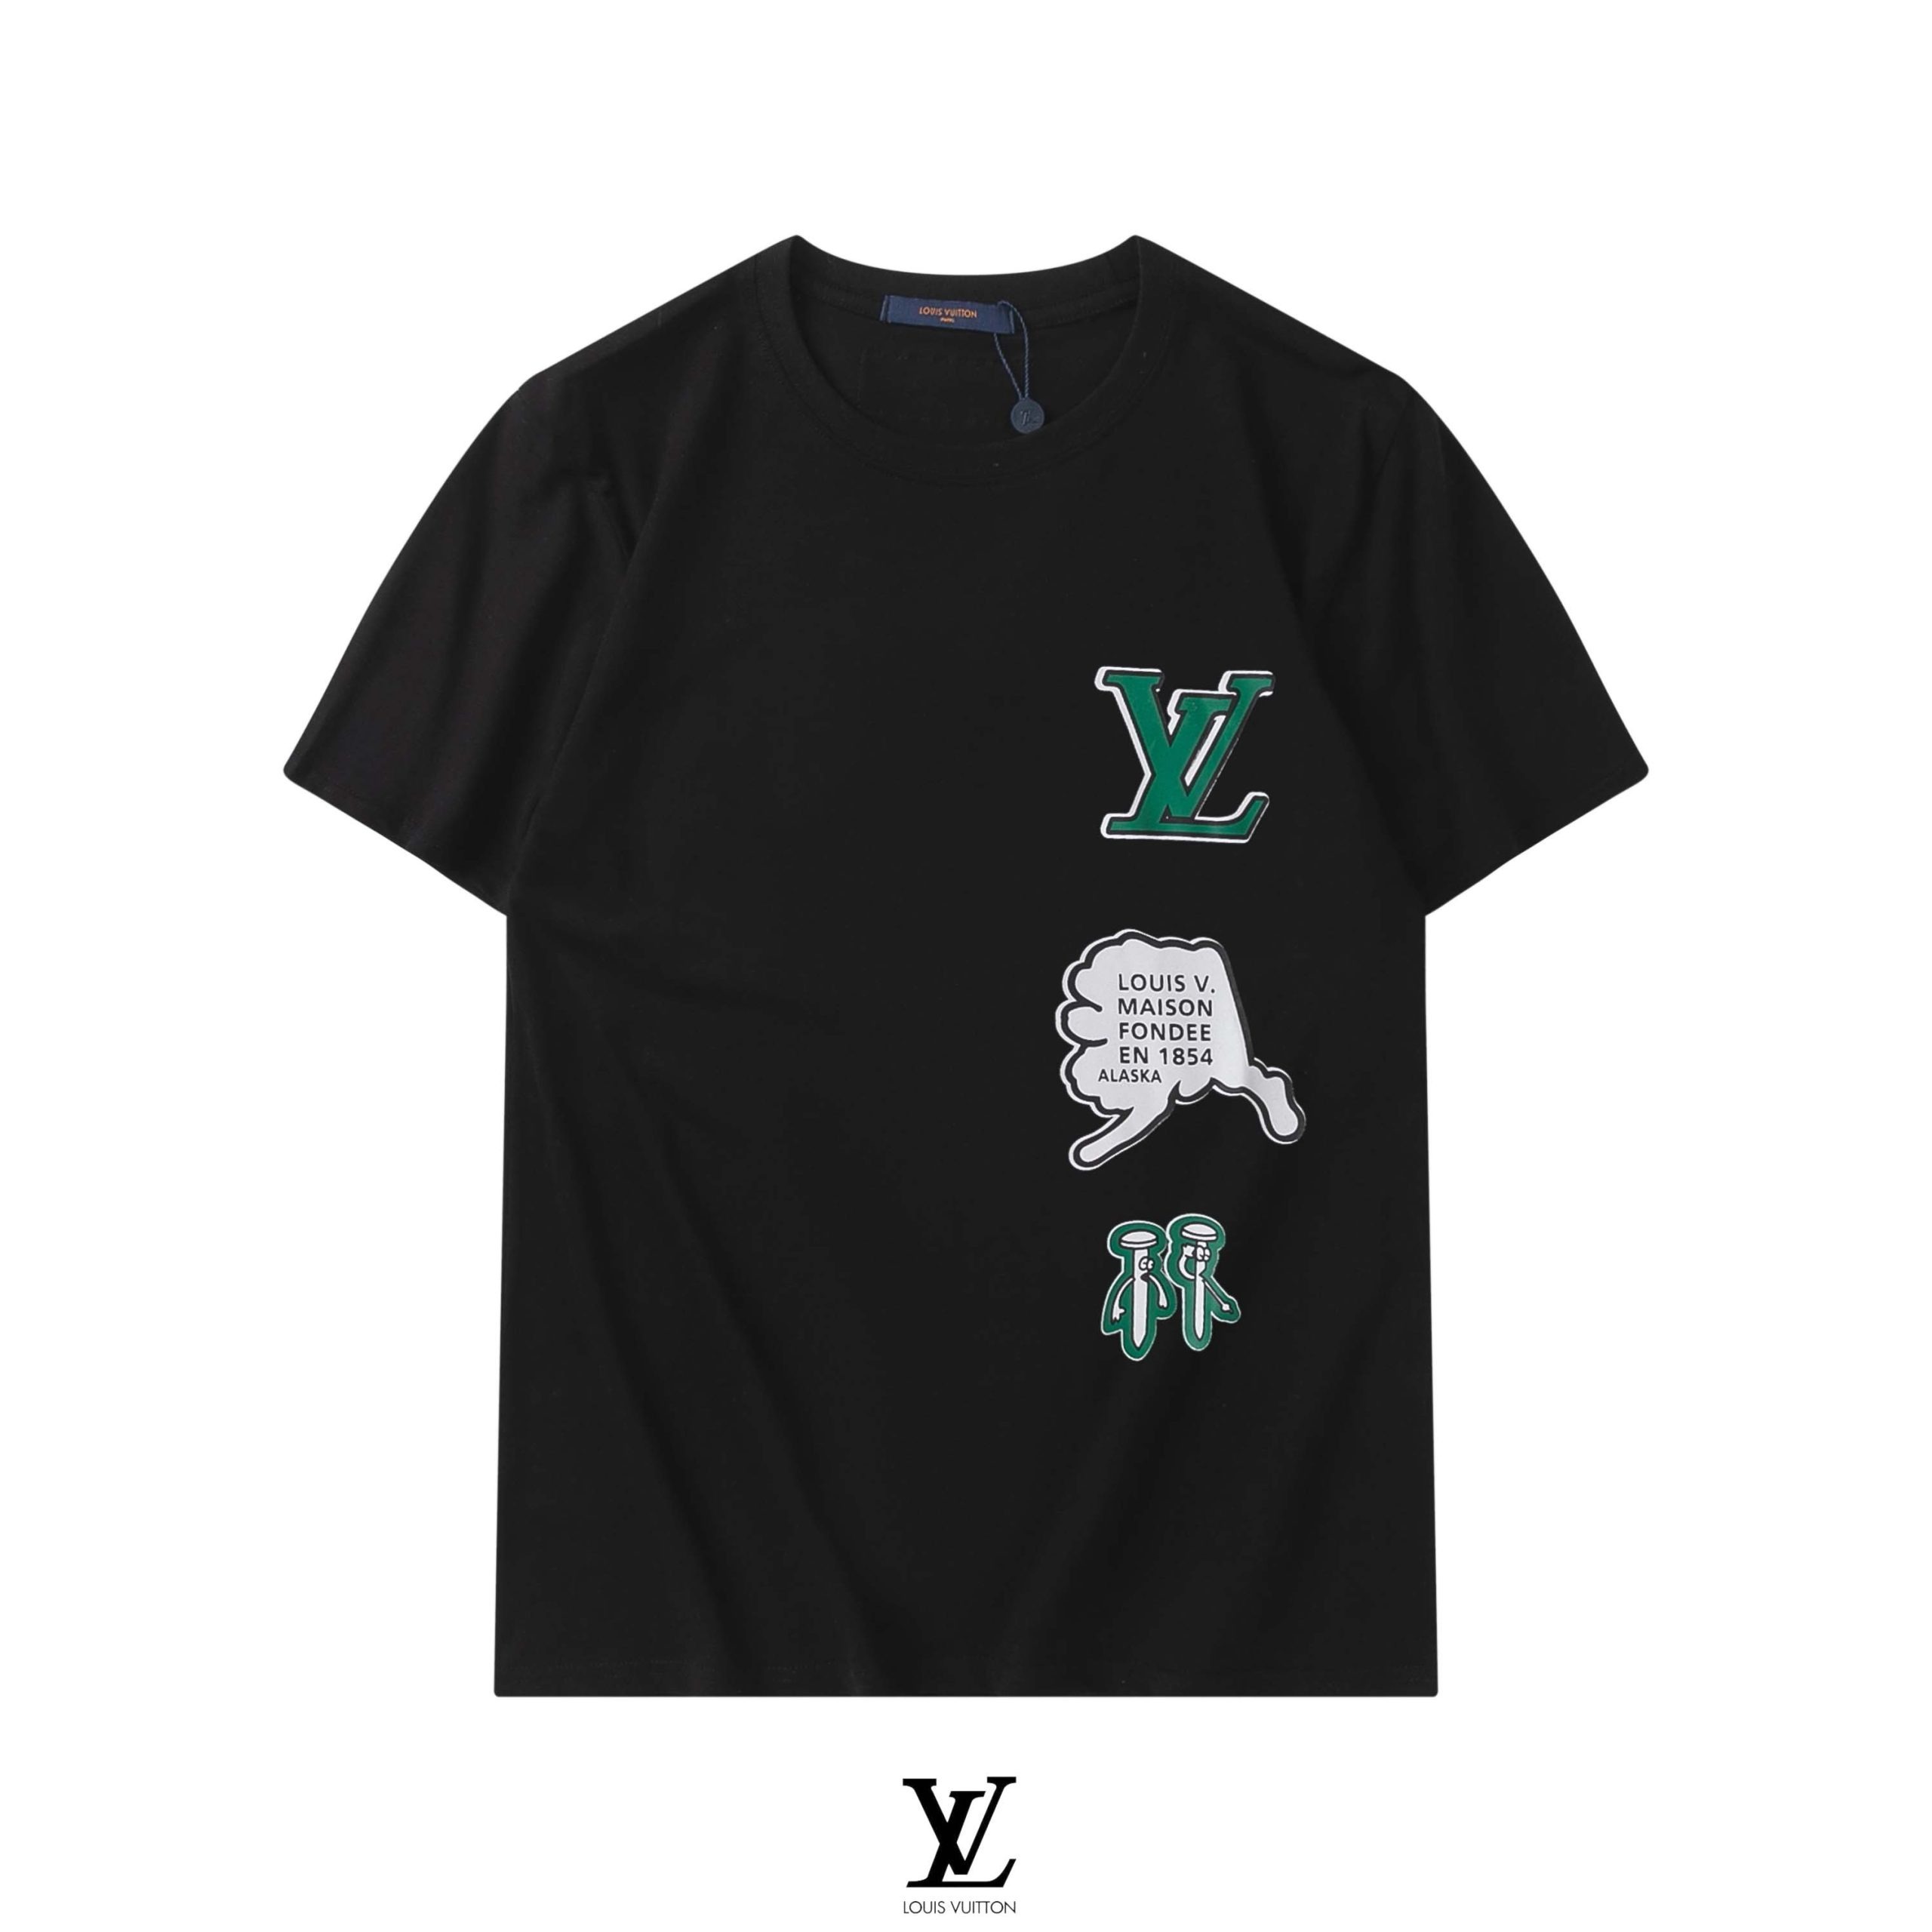 Rodriguez على X: Camisetas Louis Vuitton Hombre GS40 Camisetas